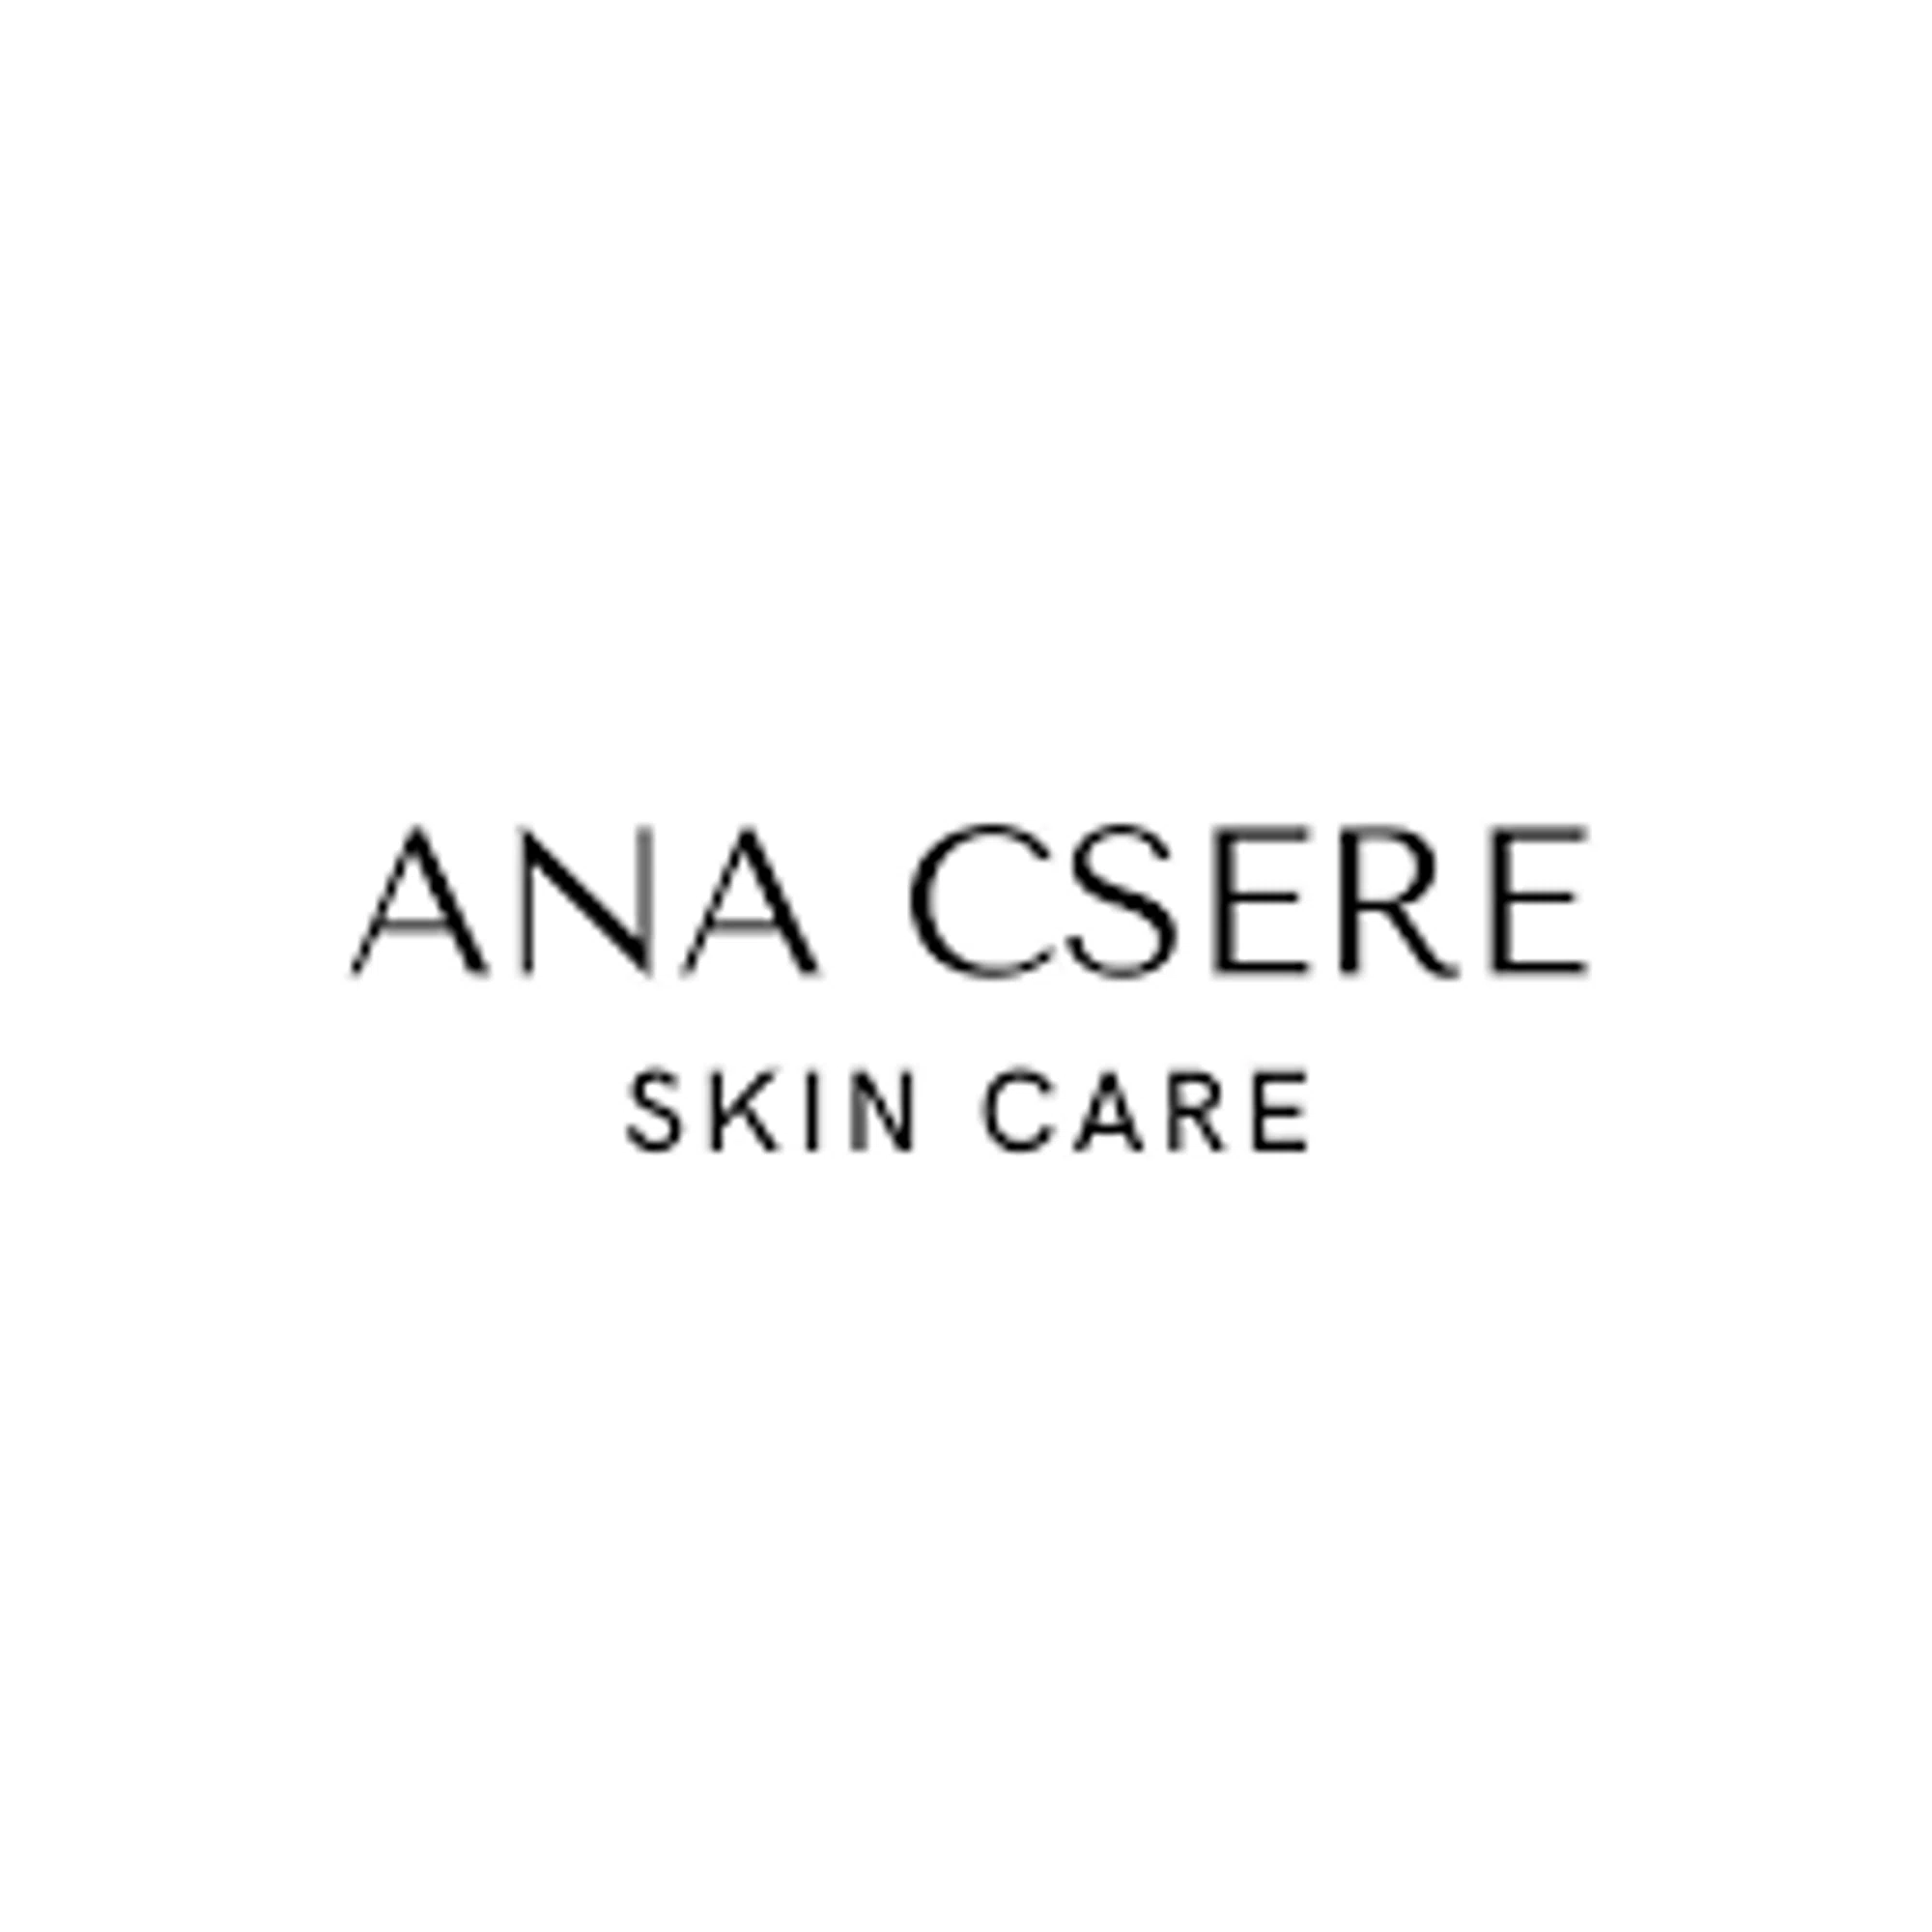 Ana Csere Skin Care